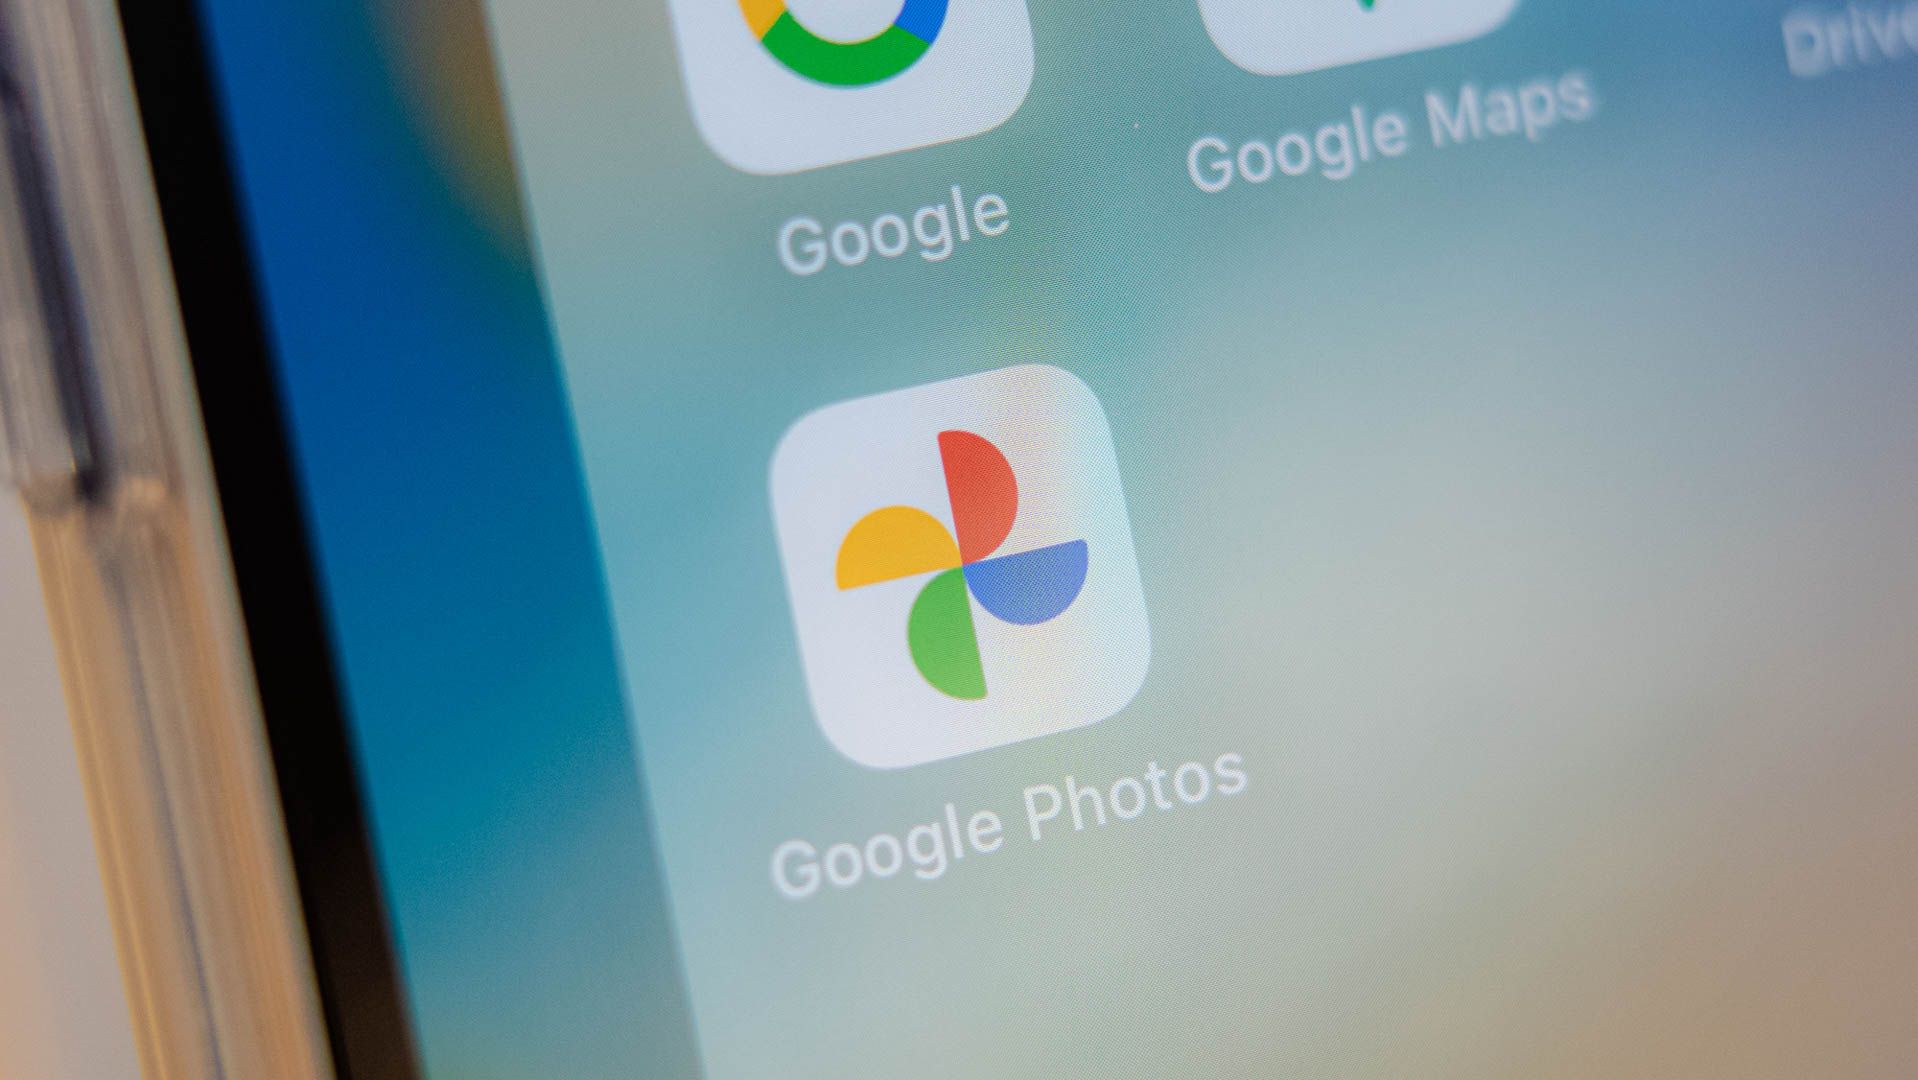 Google Photos app icon.